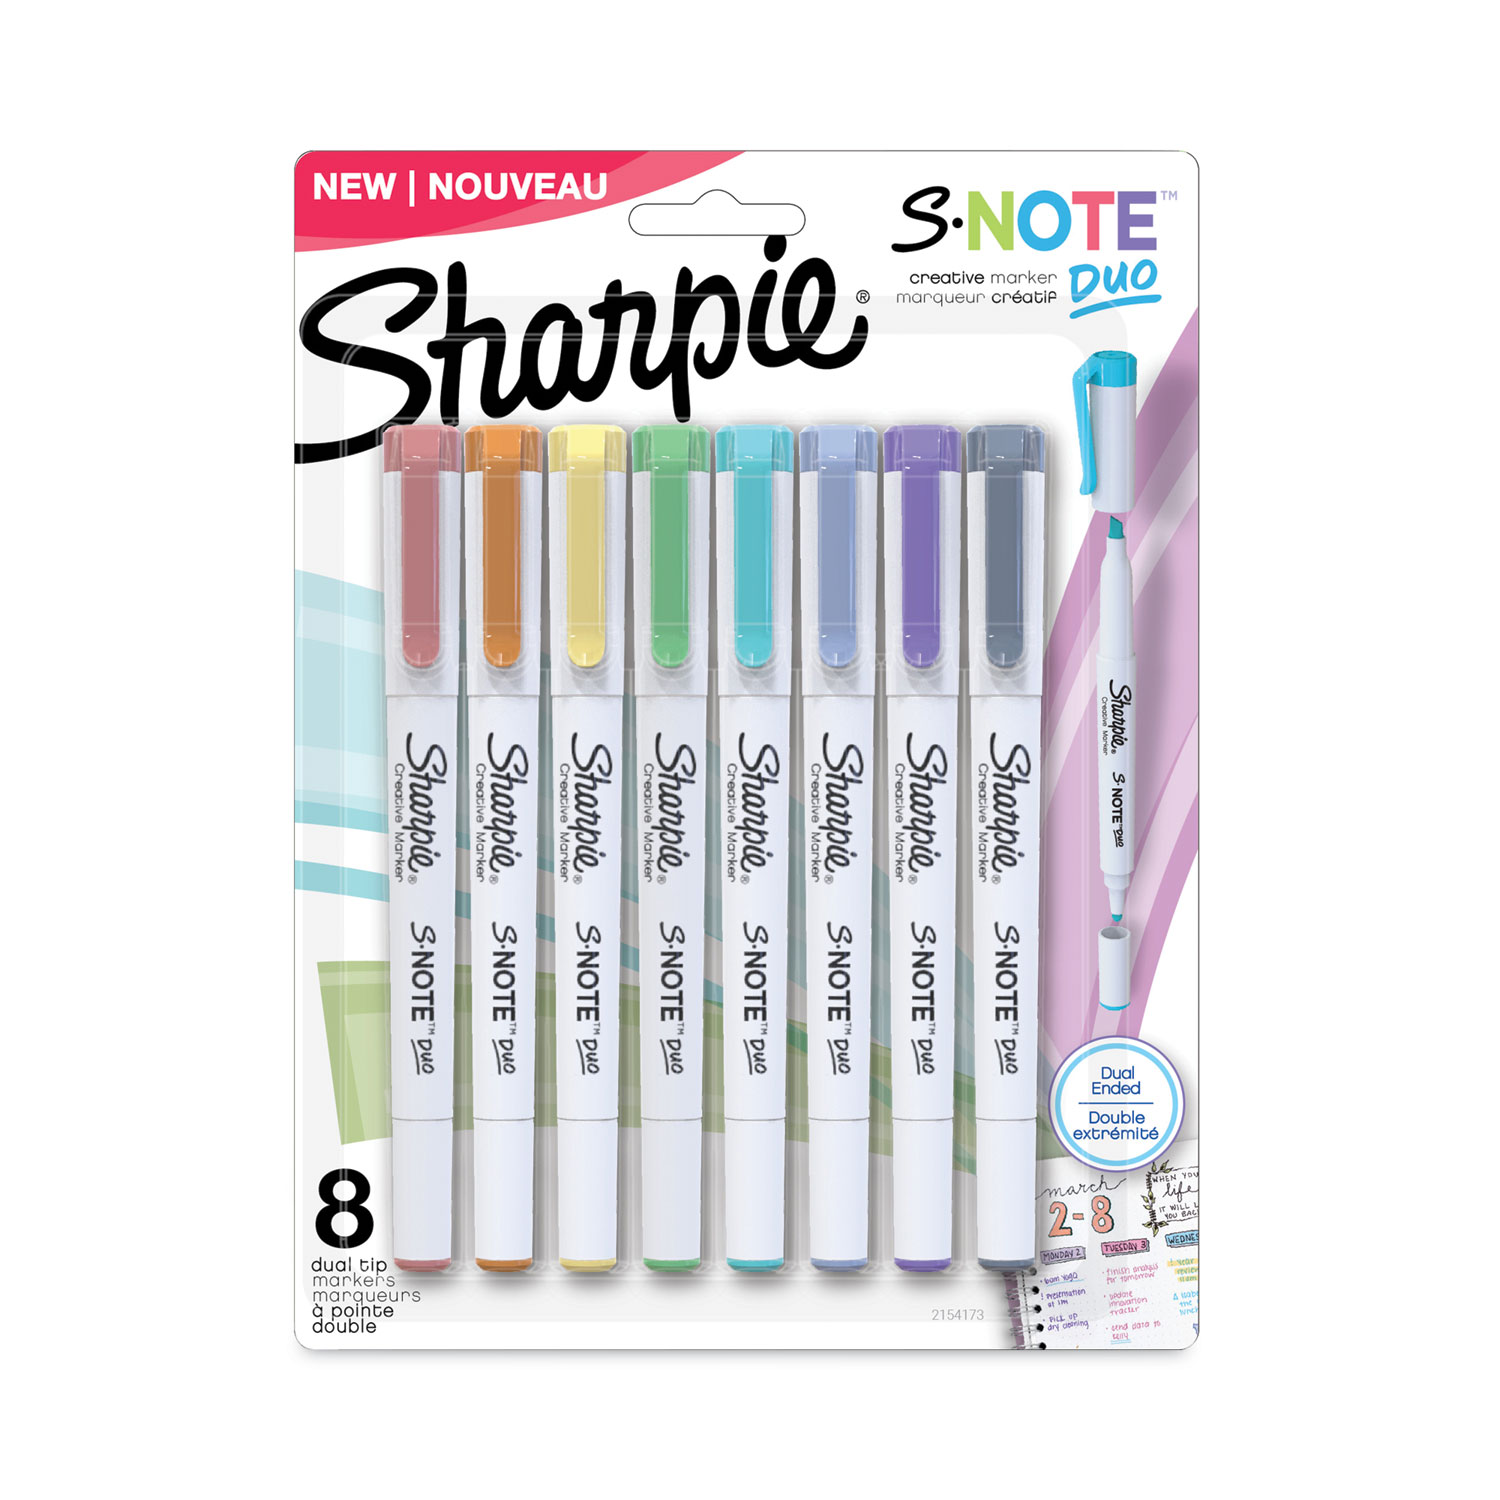 Sharpie S-Note Sale